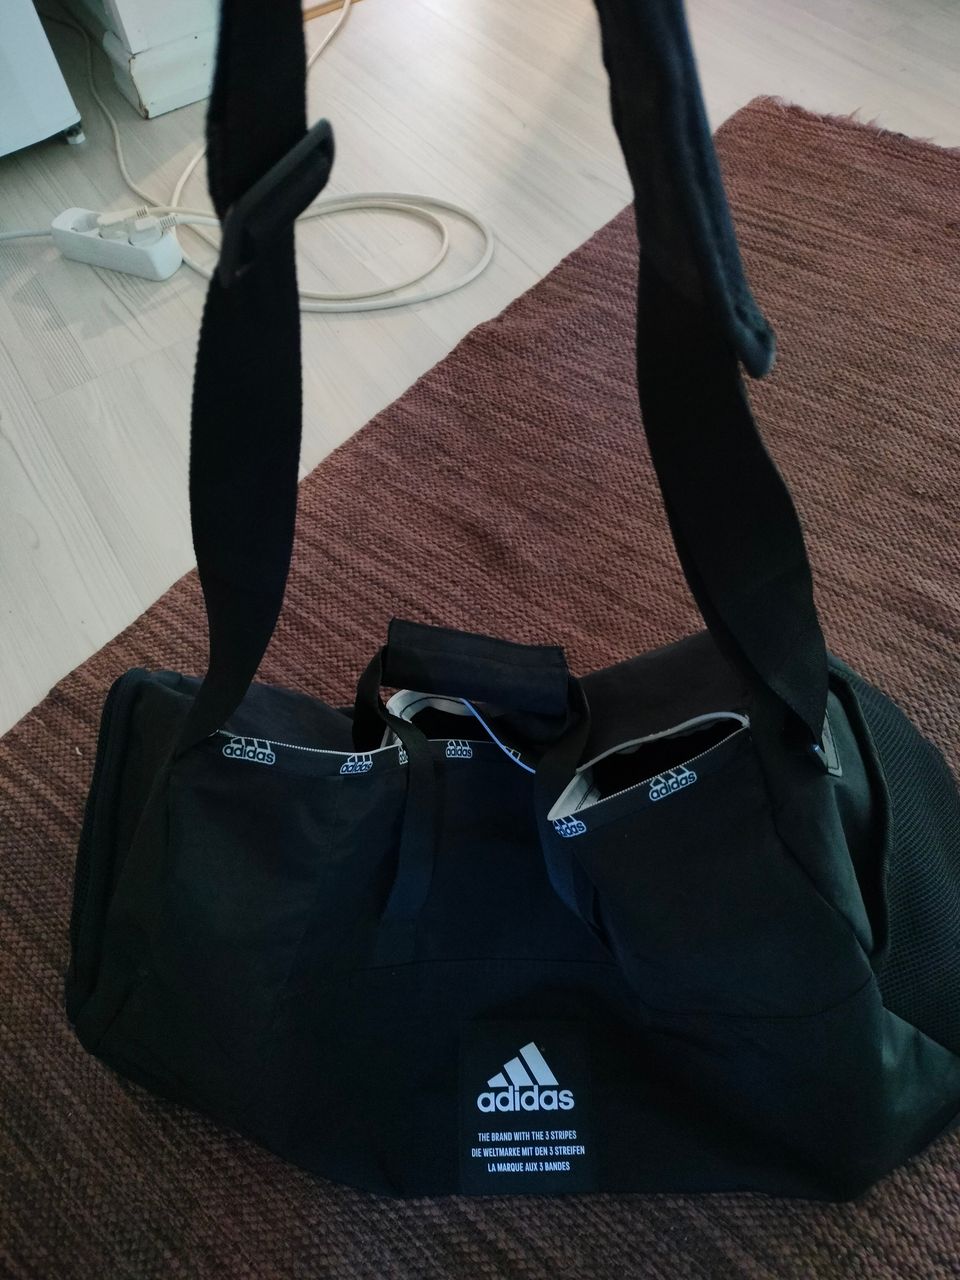 Adidas laukku